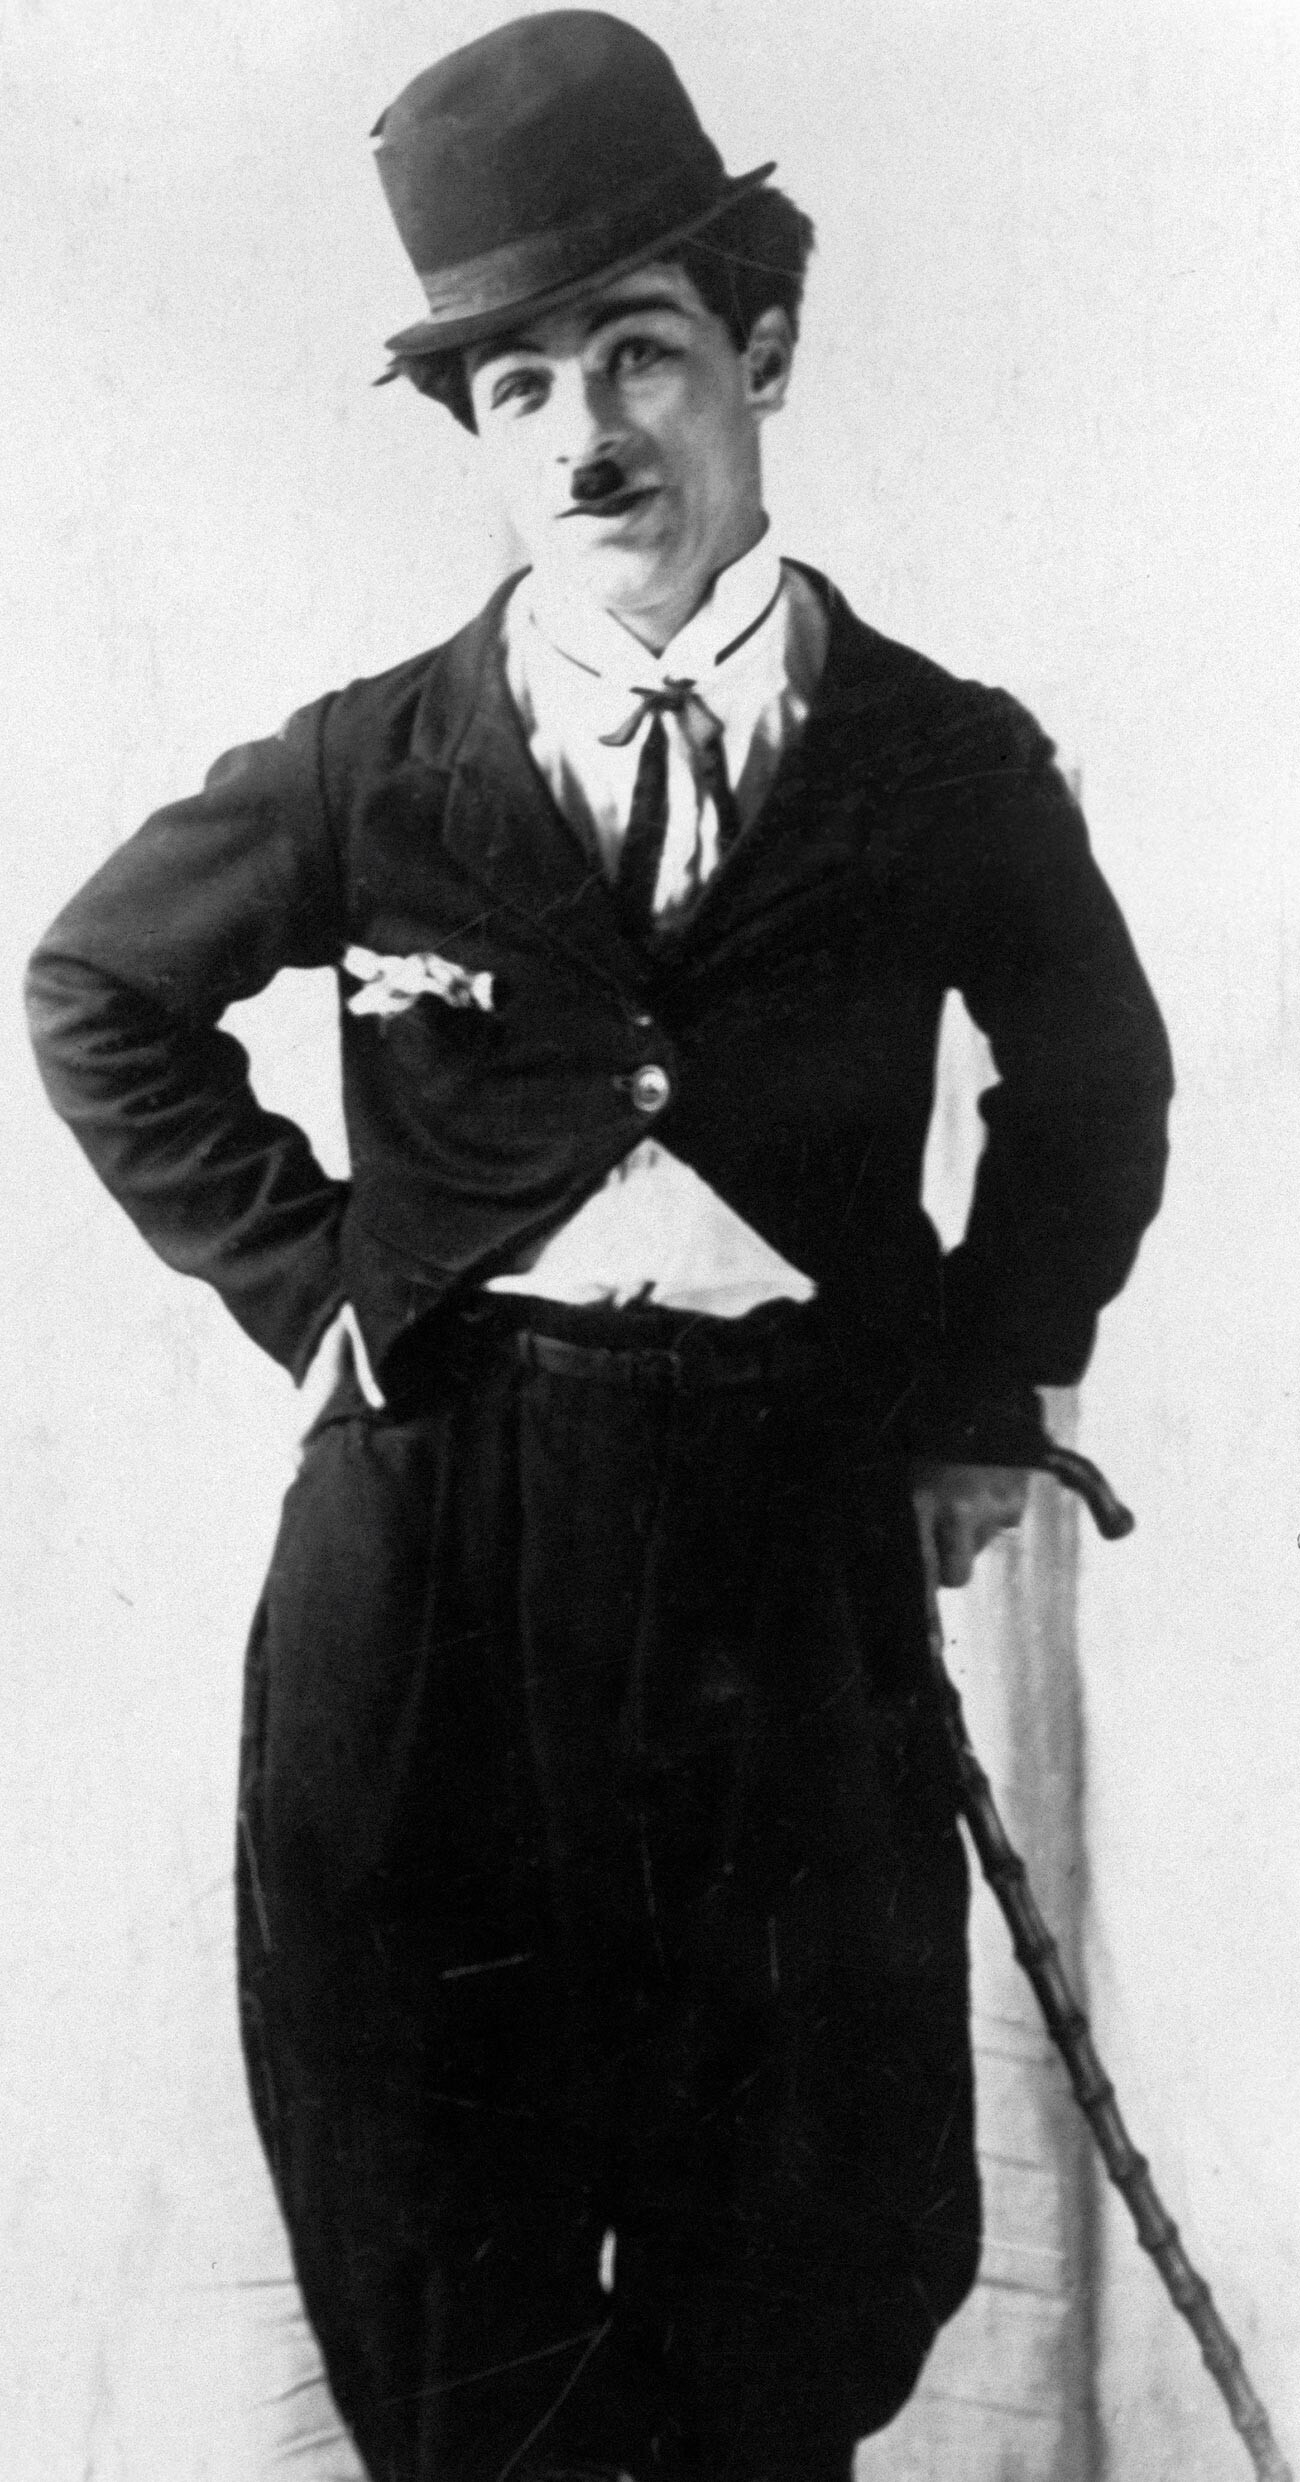 Mijaíl Rumiántsev se inspiró mucho en el famoso personaje de Charlie Chaplin, el Vagabundo.
